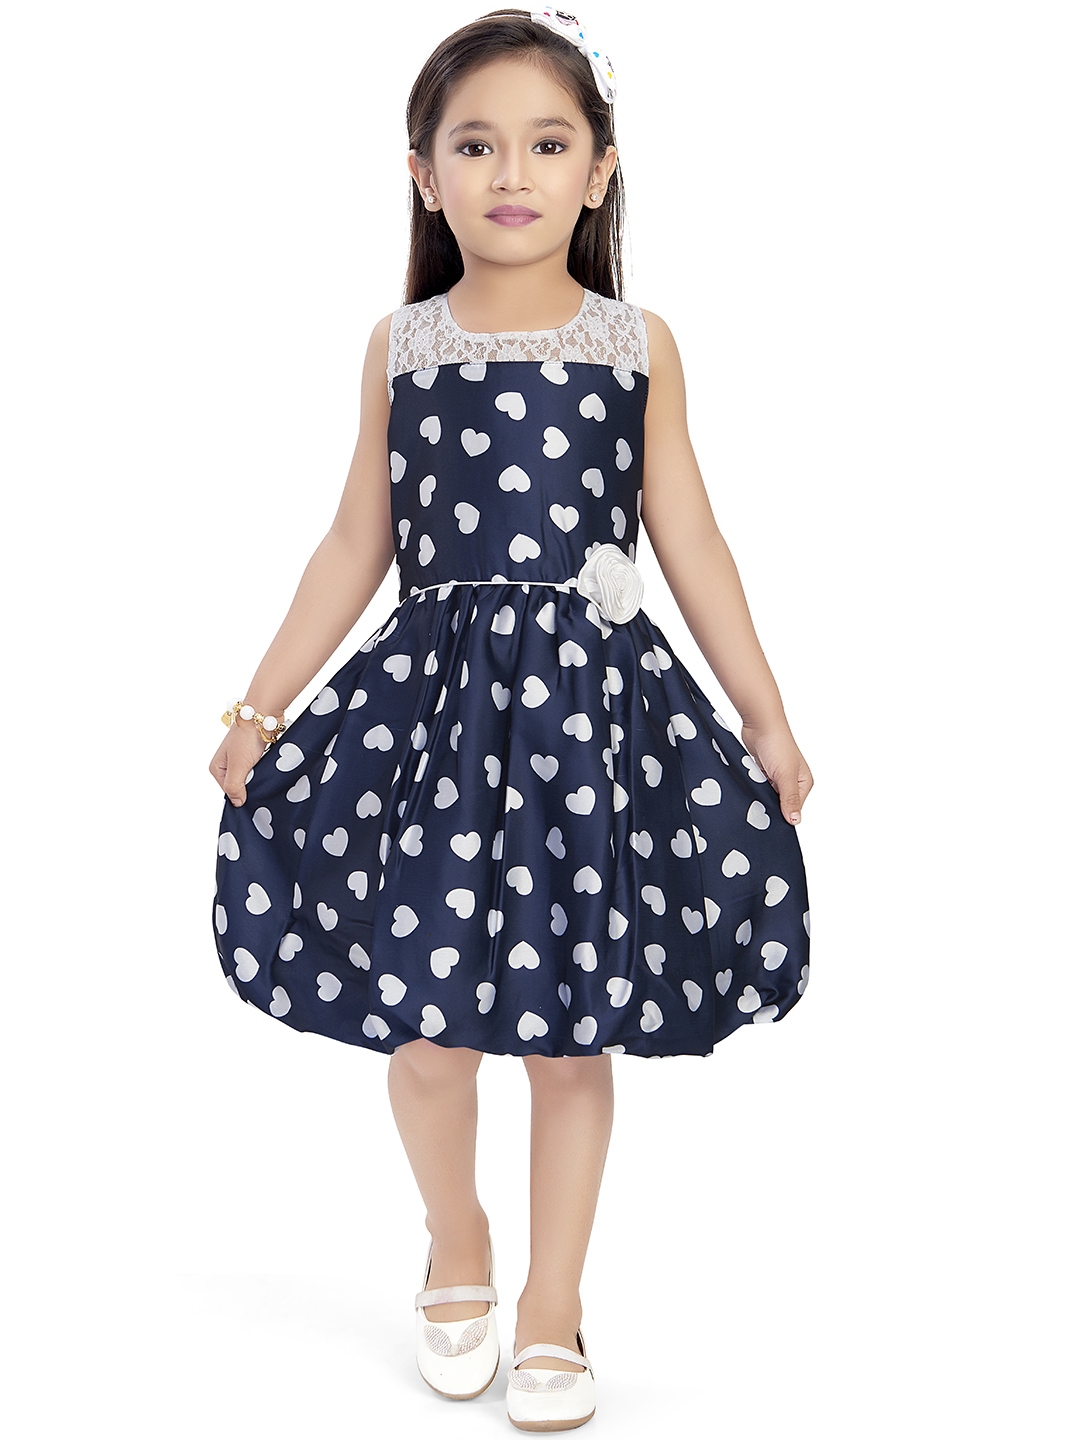 Buy Doodle Girls Navy Blue & White Heart Print Balloon Dress - Dresses ...